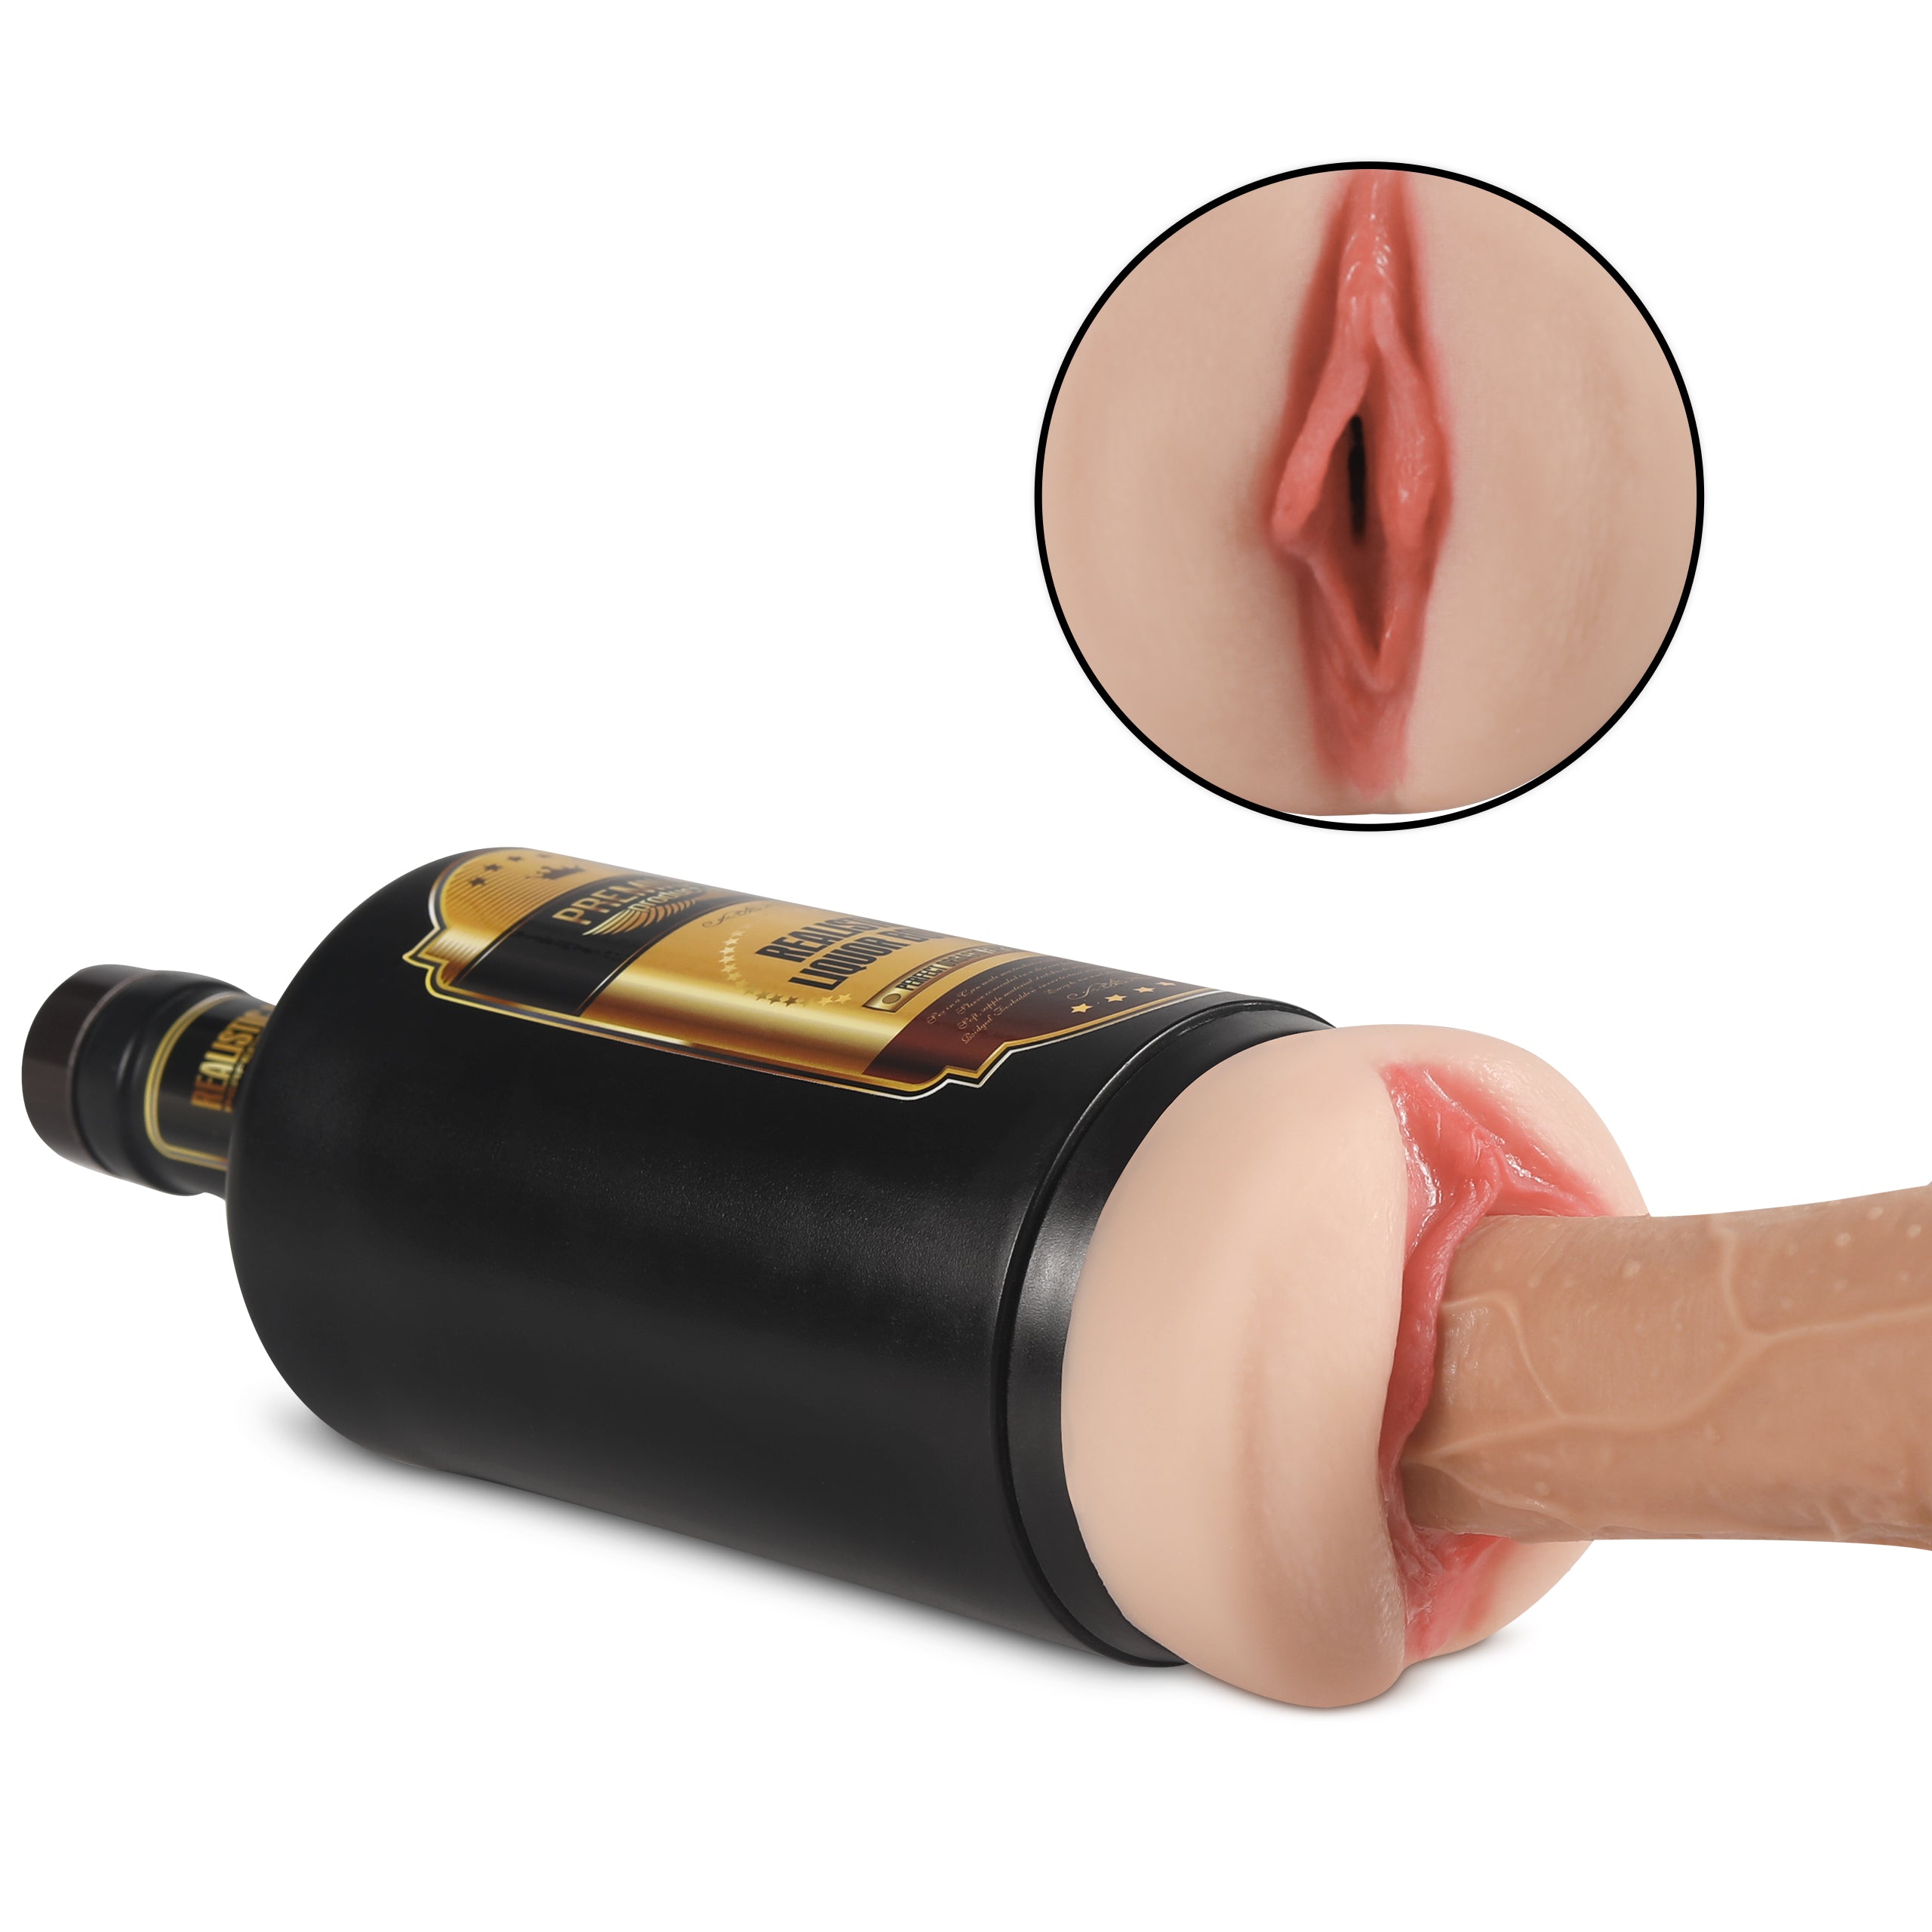 Propinkup Weinform, realistische Vagina, austauschbare Hülse, lebensechte Muschi-Masturbationsschale 